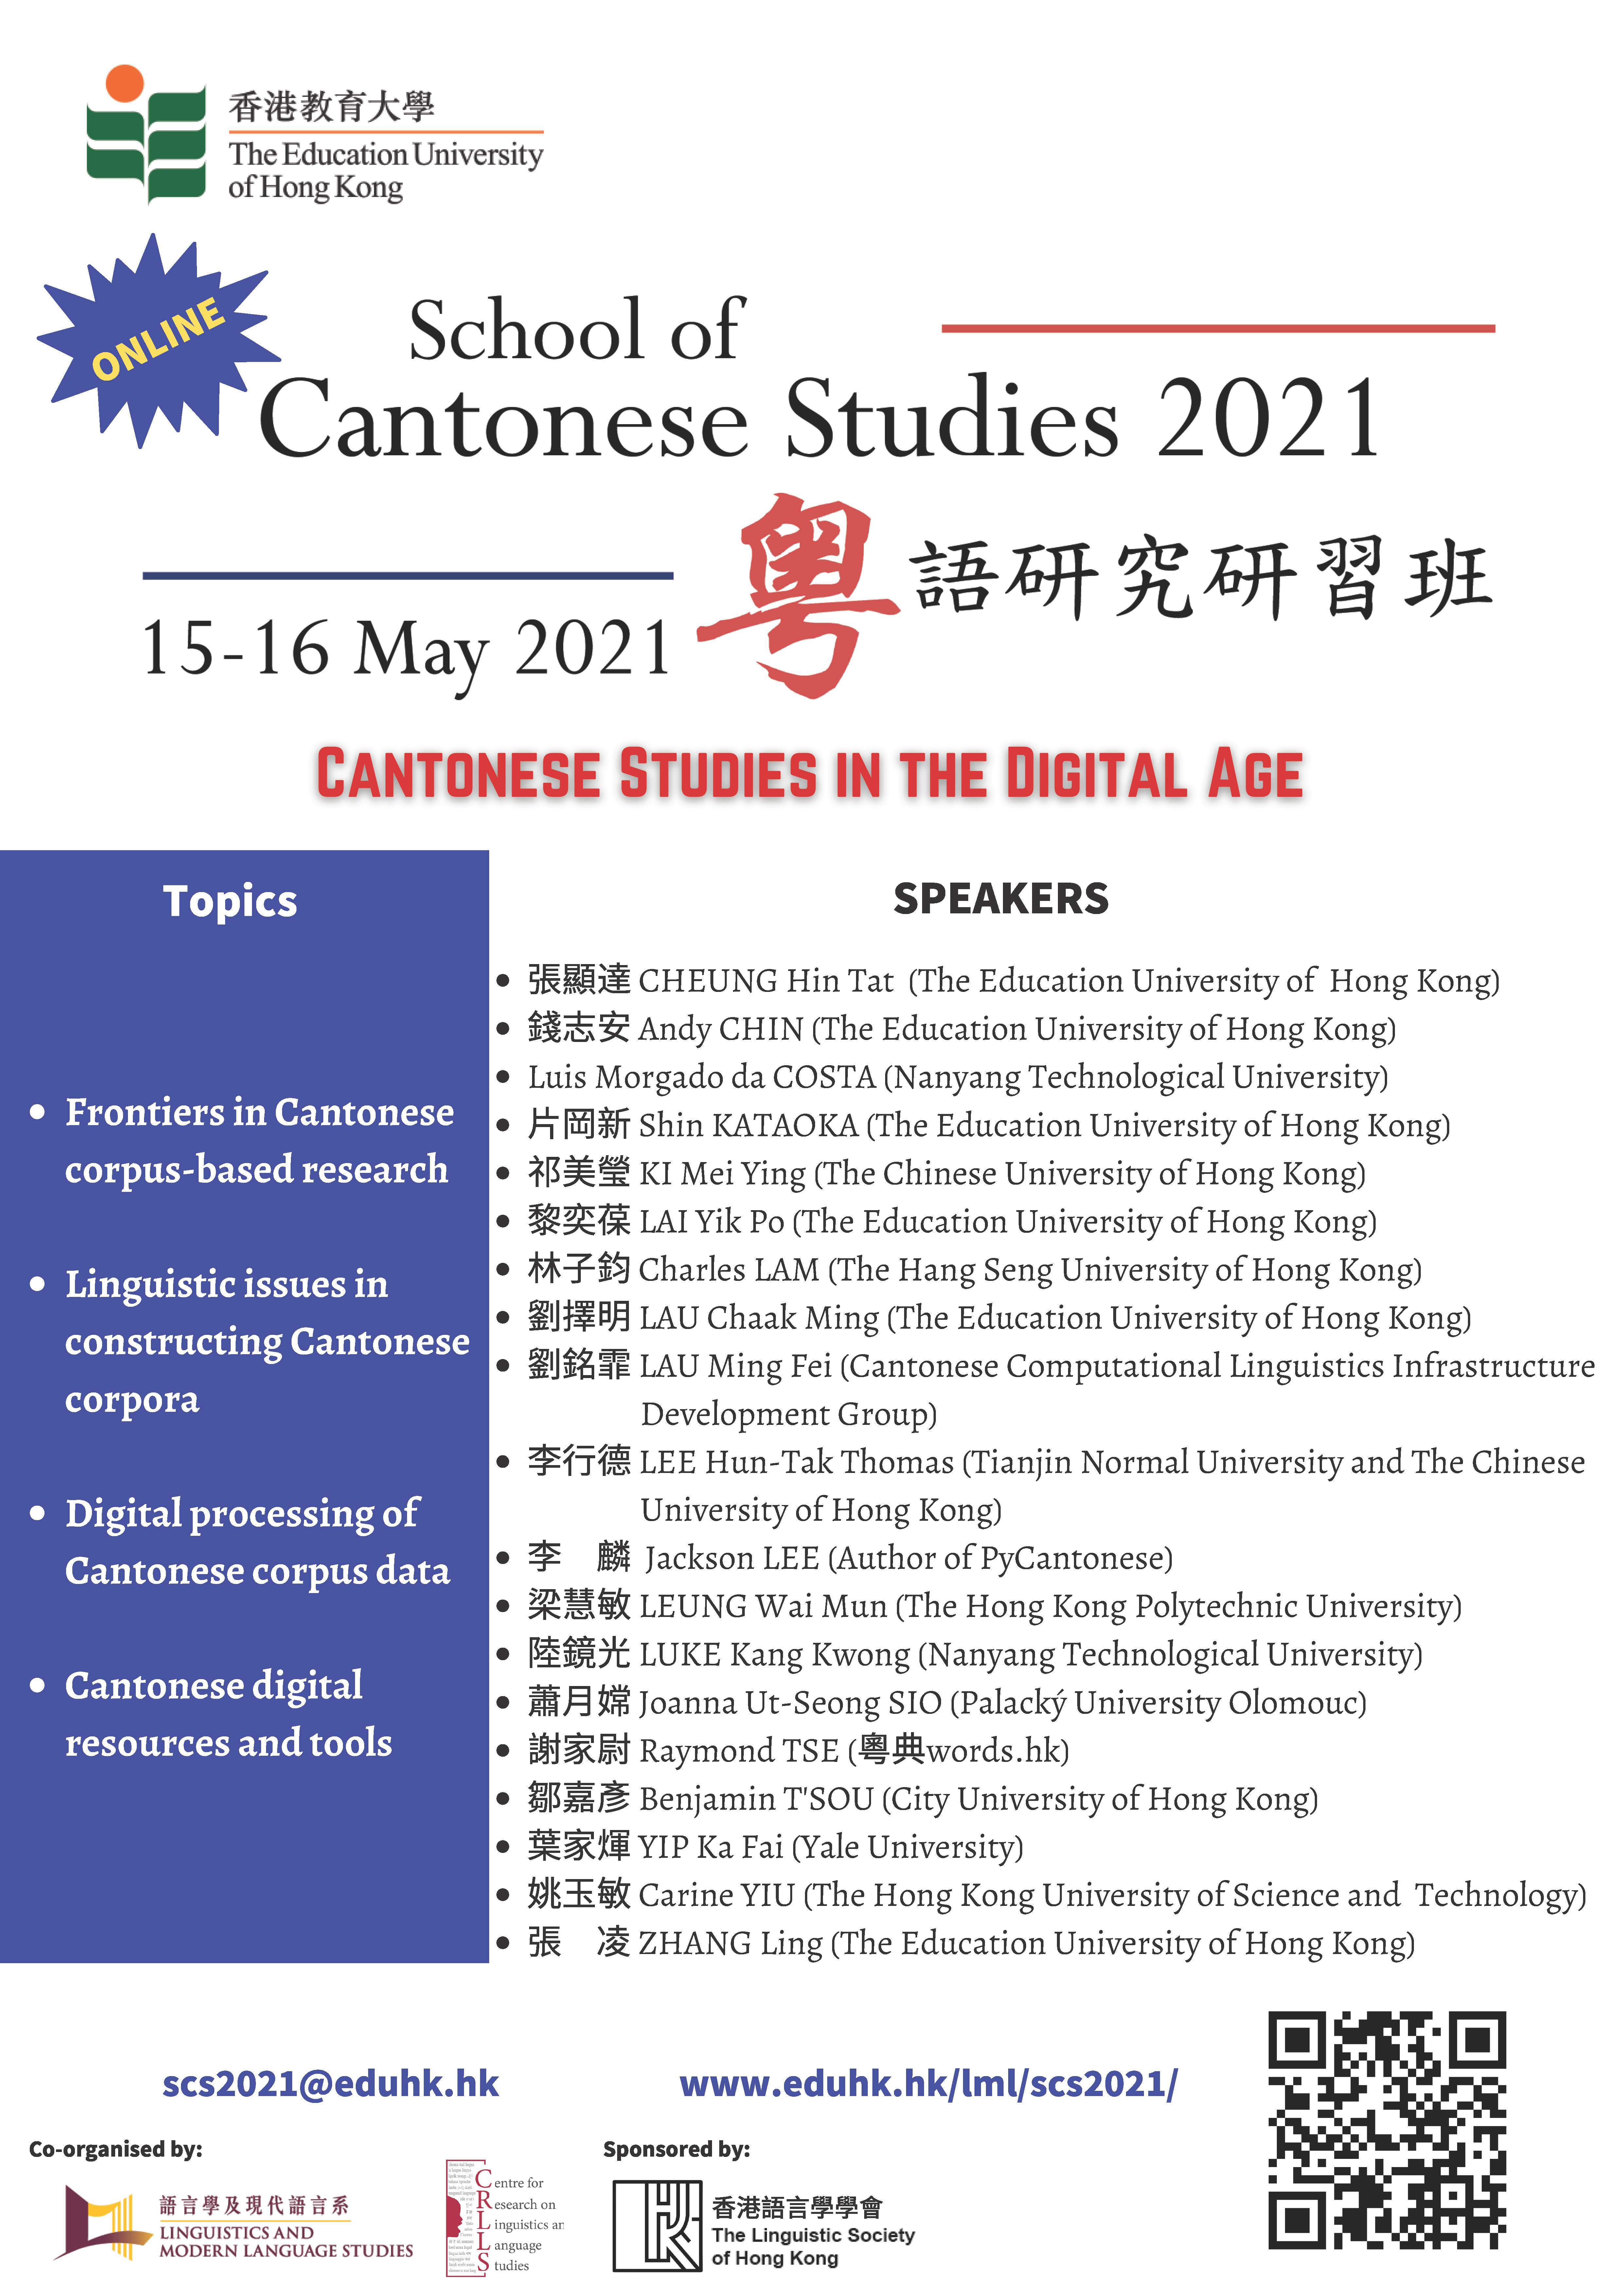 School of Cantonese Studies 2021 Poster